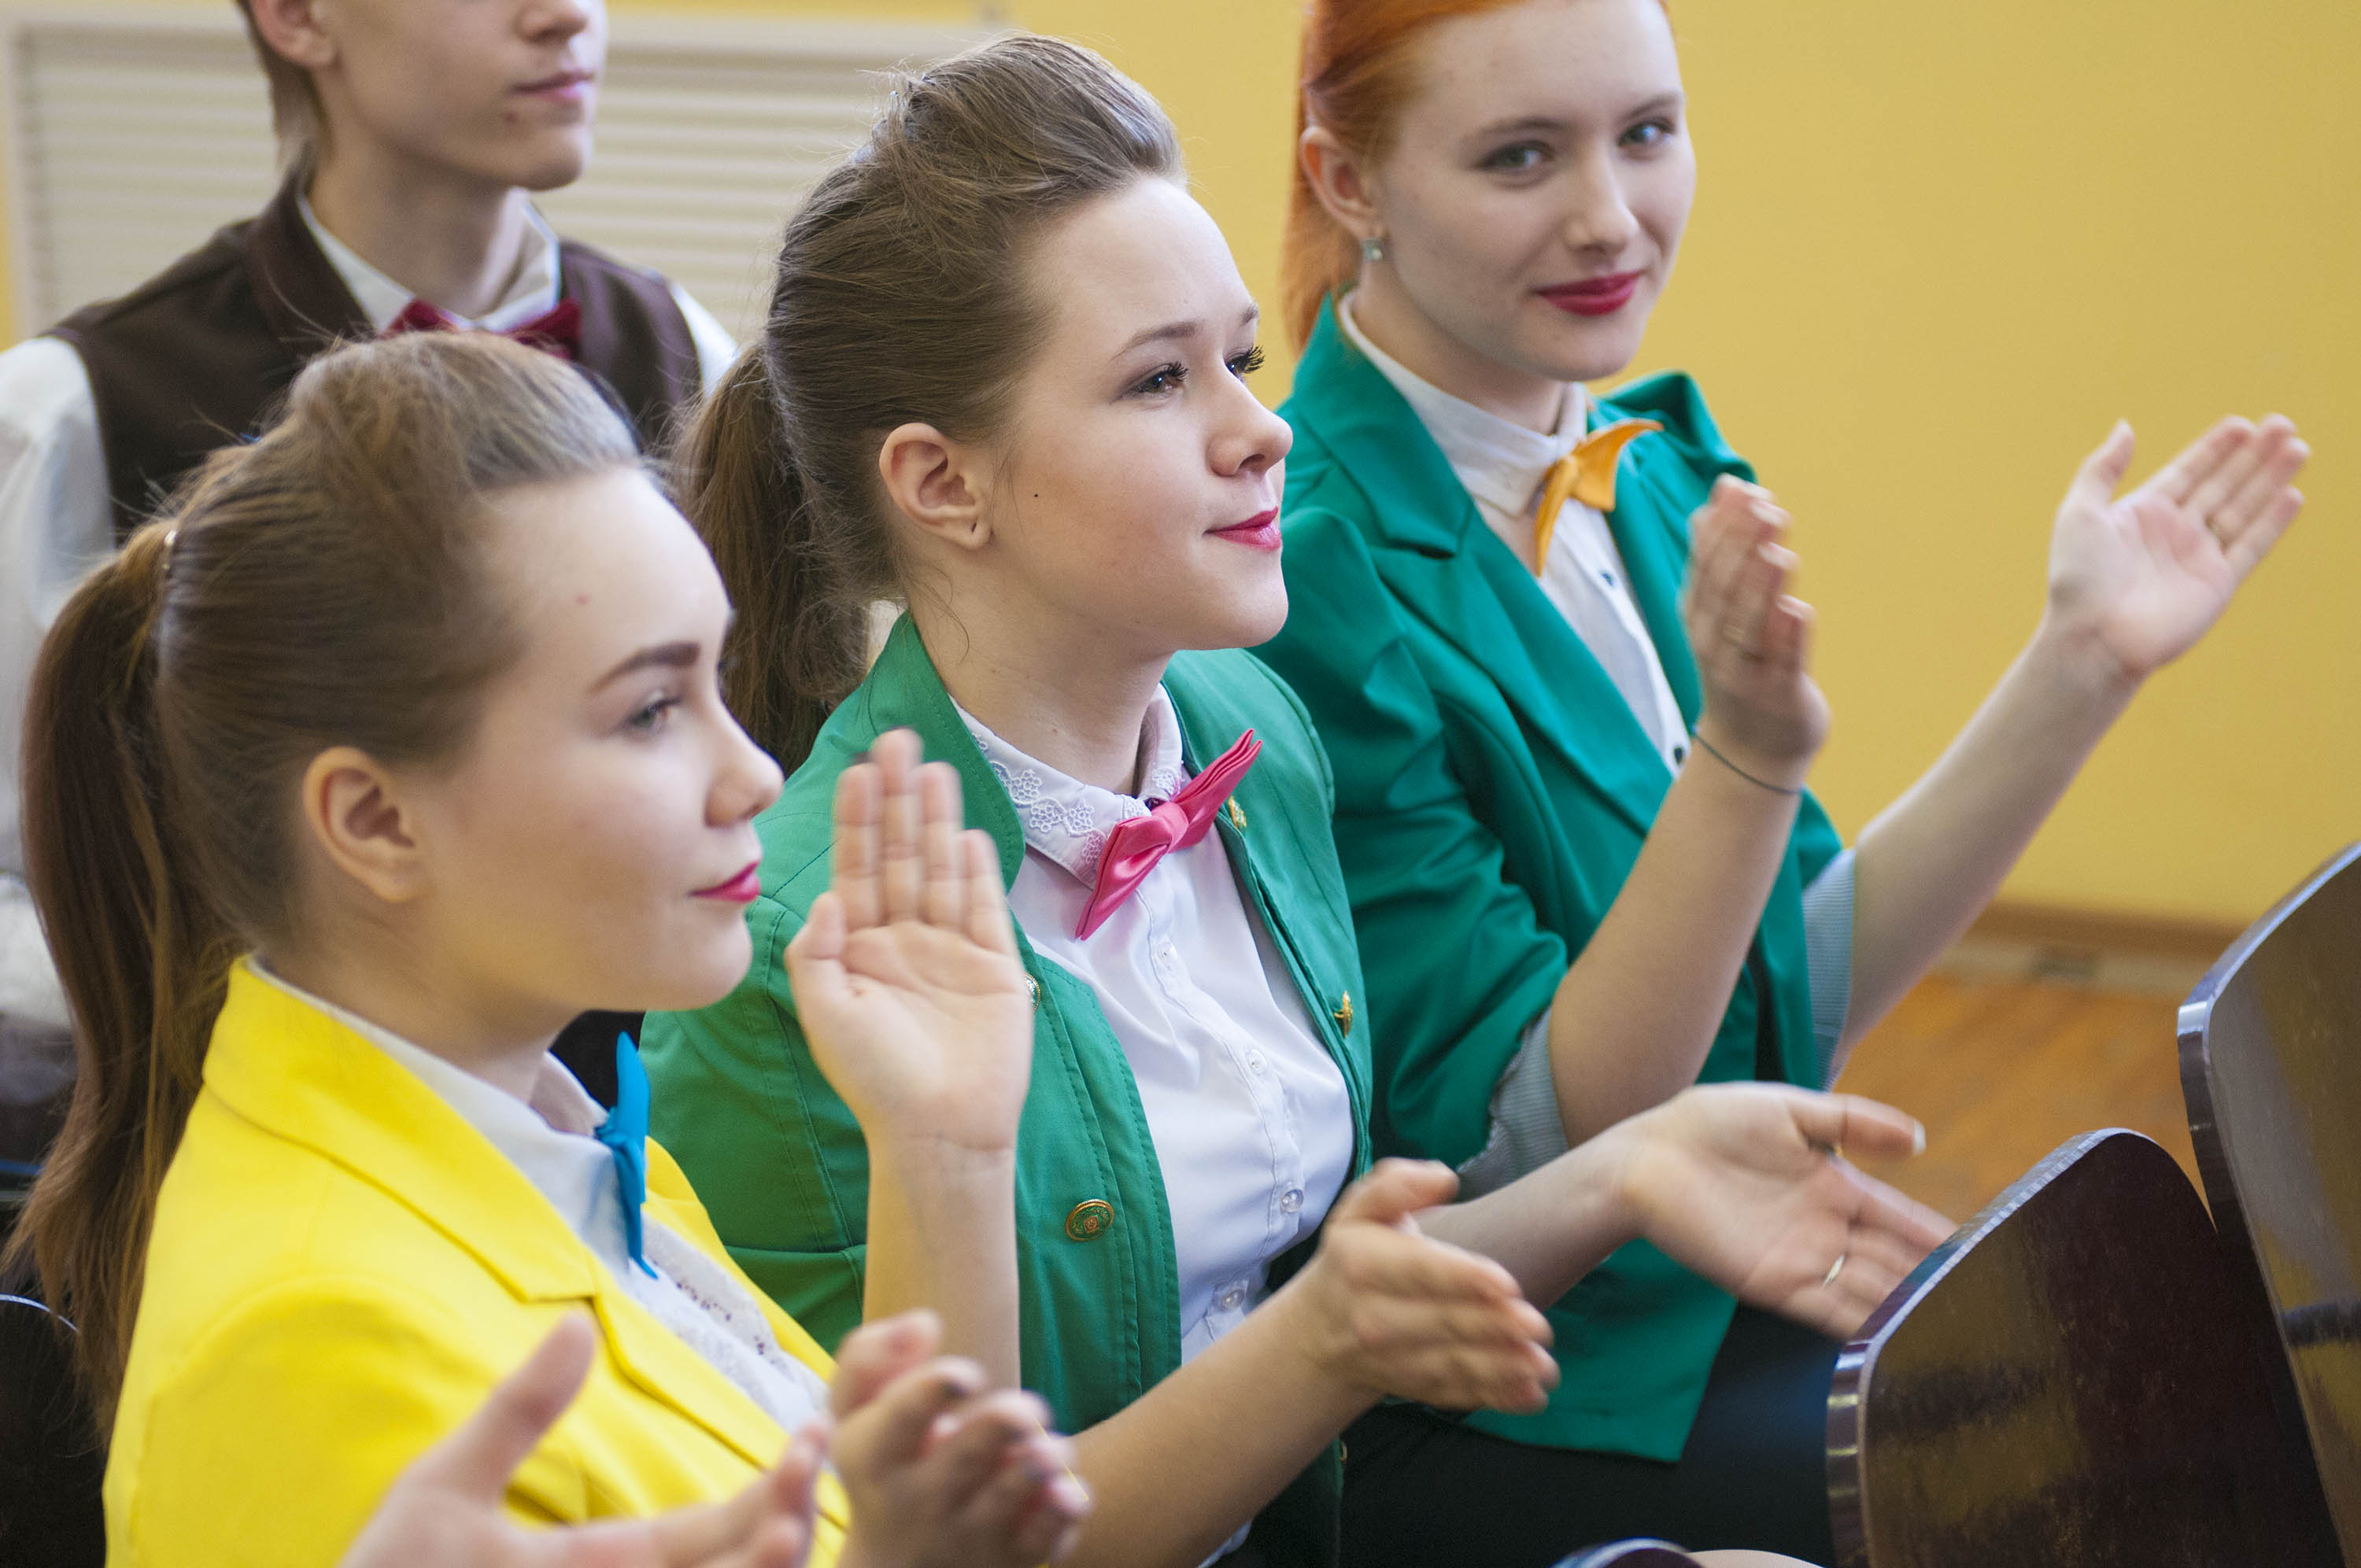 В г. Кемерово прошел финал областной молодежной программы «Арт-Профи Форум», в котором приняли участие 54 профессиональных образовательных организаций Кузбасса